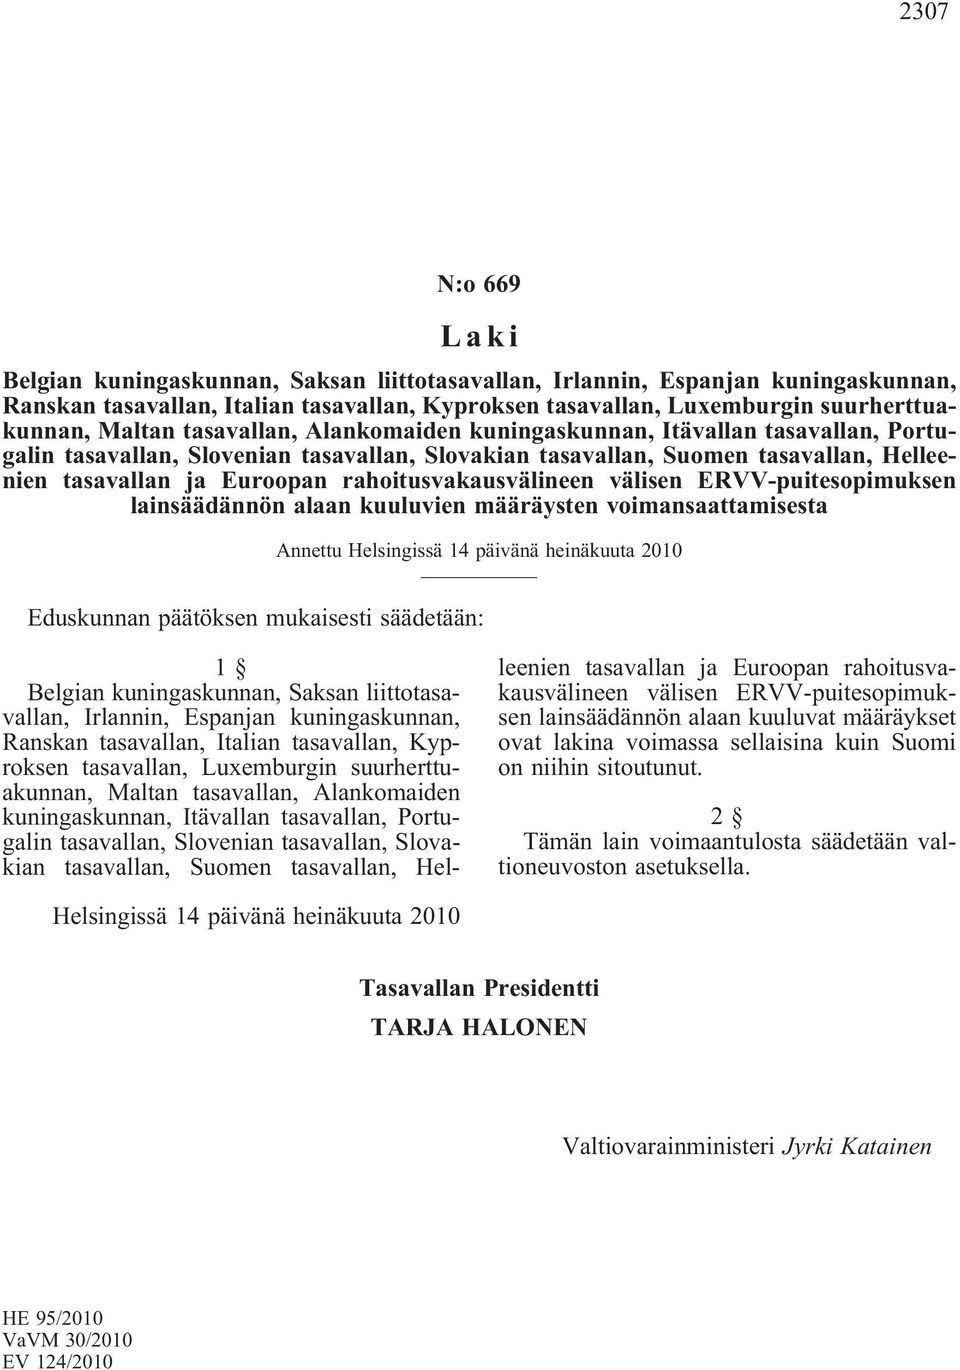 rahoitusvakausvälineen välisen ERVV-puitesopimuksen lainsäädännön alaan kuuluvien määräysten voimansaattamisesta Annettu Helsingissä 14 päivänä heinäkuuta 2010 Eduskunnan päätöksen mukaisesti